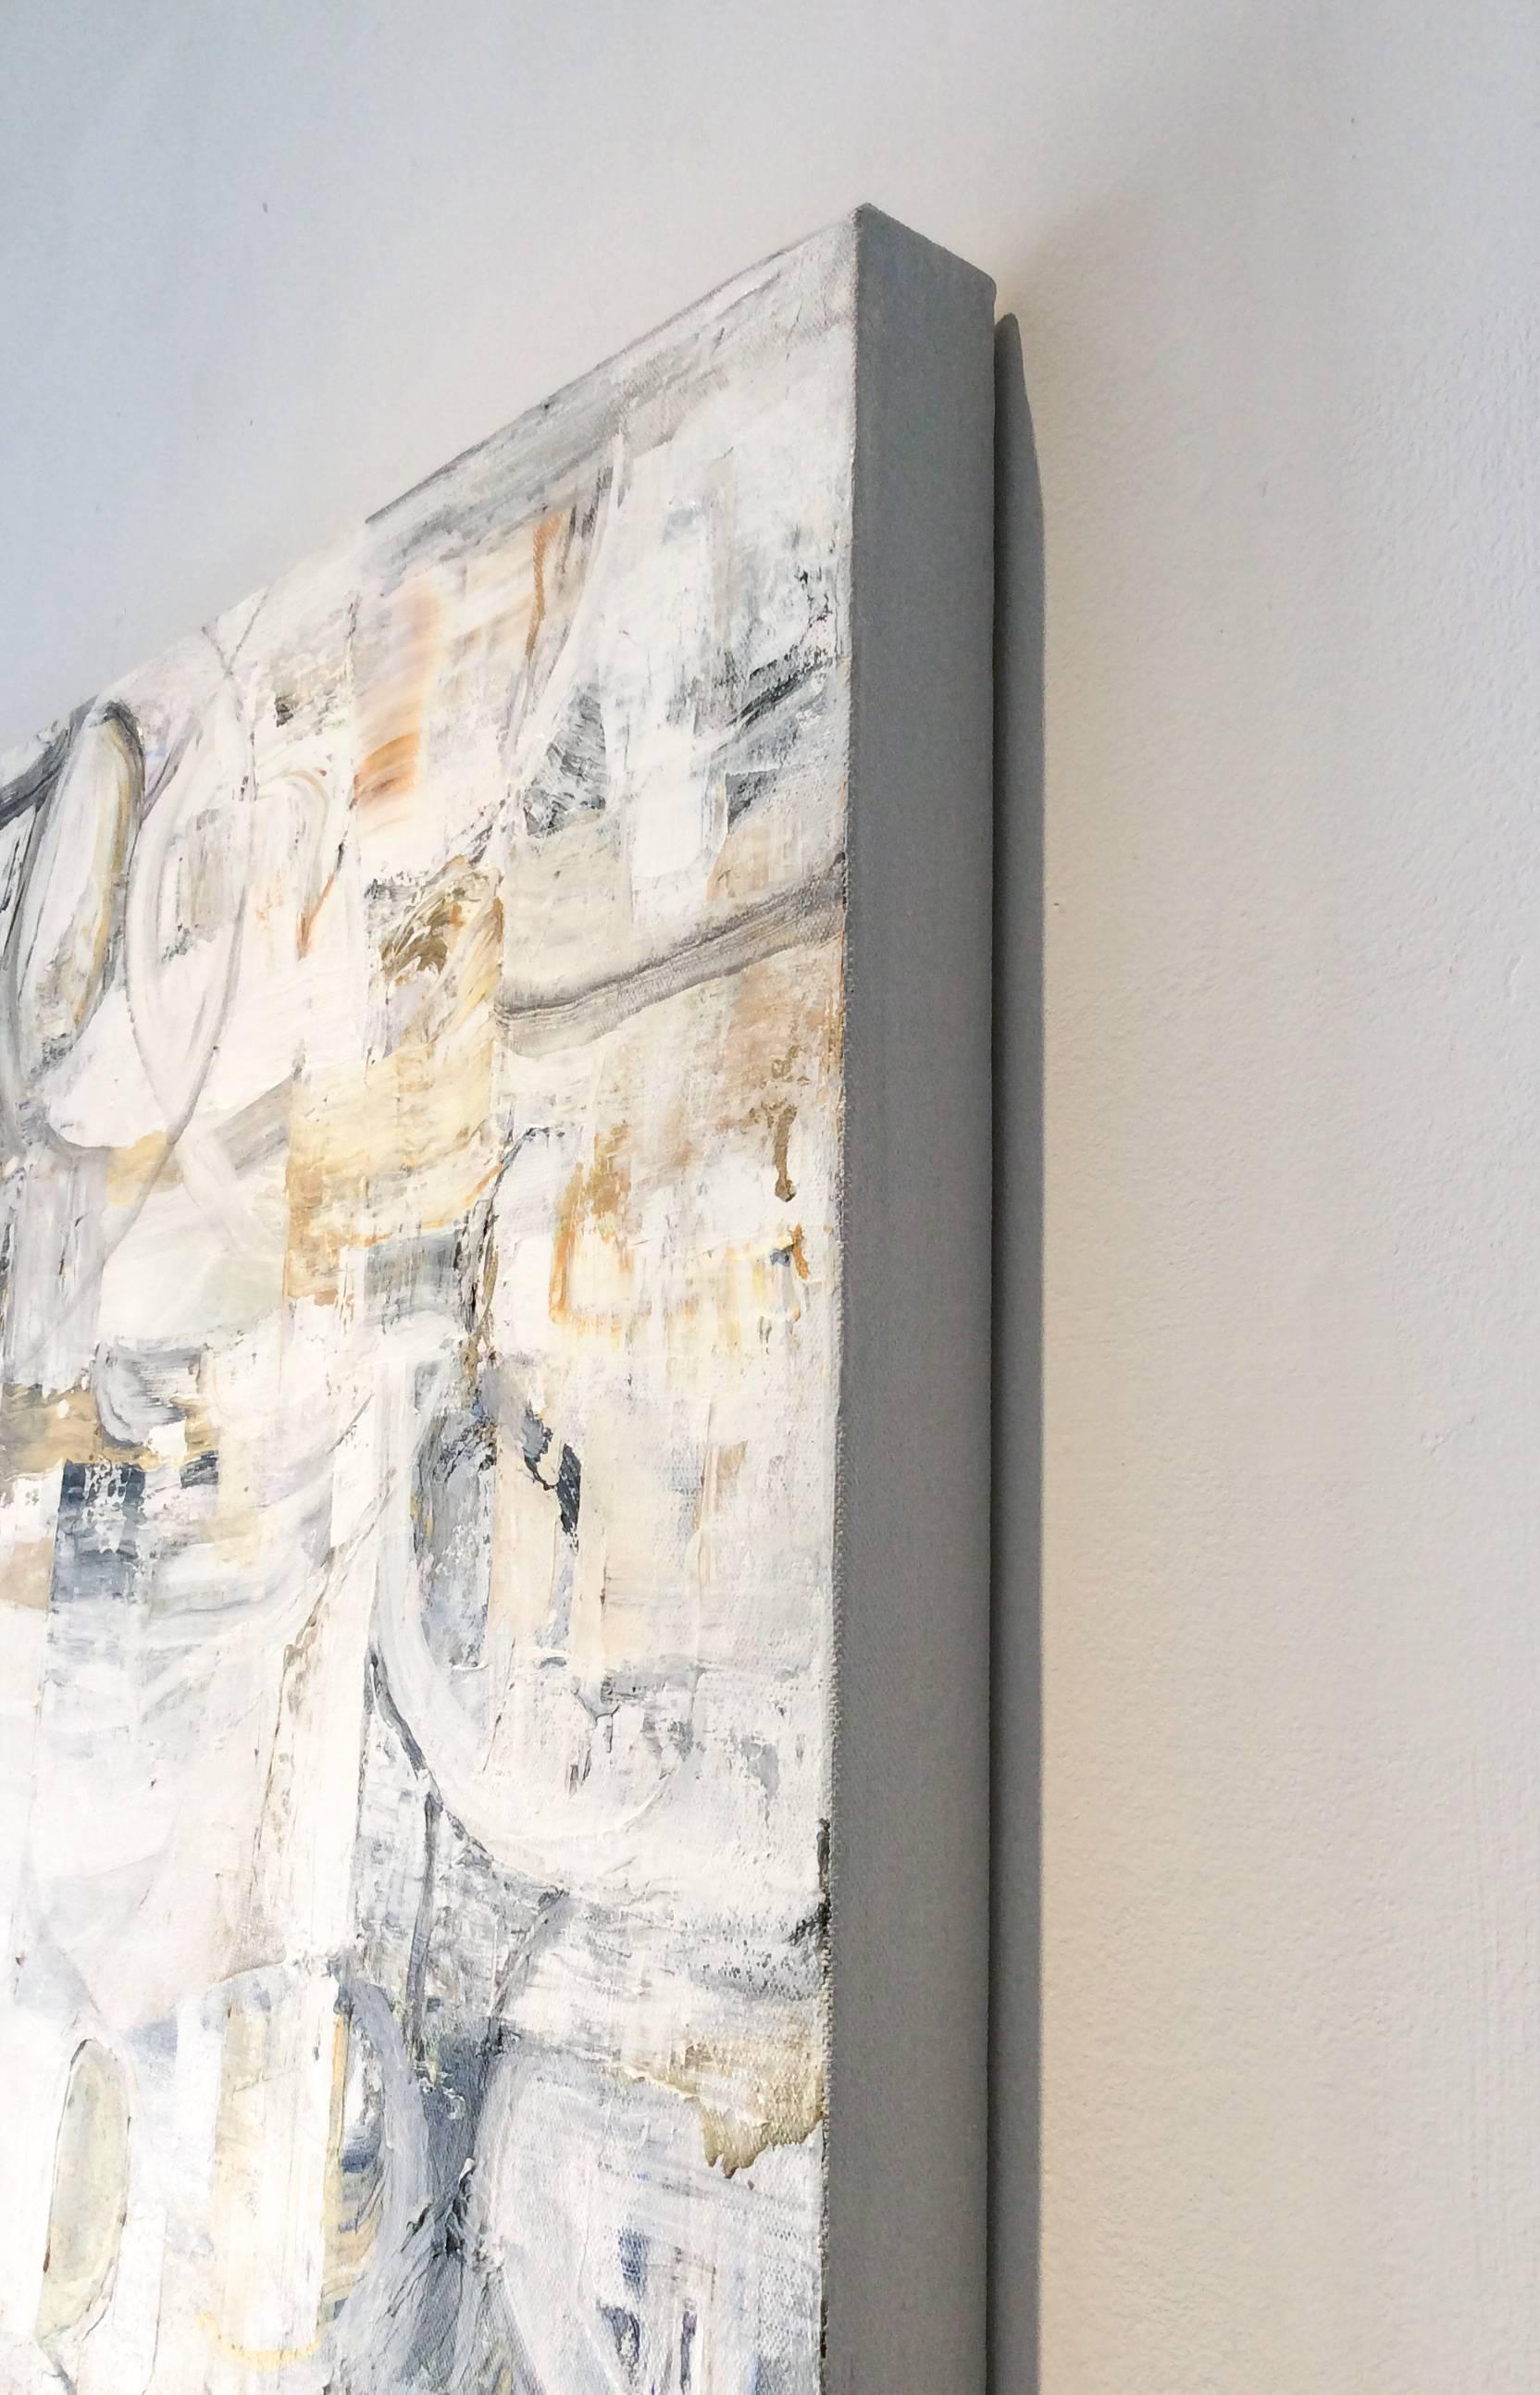 40 x 30 Zoll
acryl auf Leinwand
passt auch als Diptychon zu Ref #: LU2272031043

Dieses zeitgenössische, abstrakte Acrylgemälde im symbolistischen Stil wurde 2017 von der Künstlerin Ragellah Rourke aus dem Hudson Valley geschaffen. Im Mittelpunkt